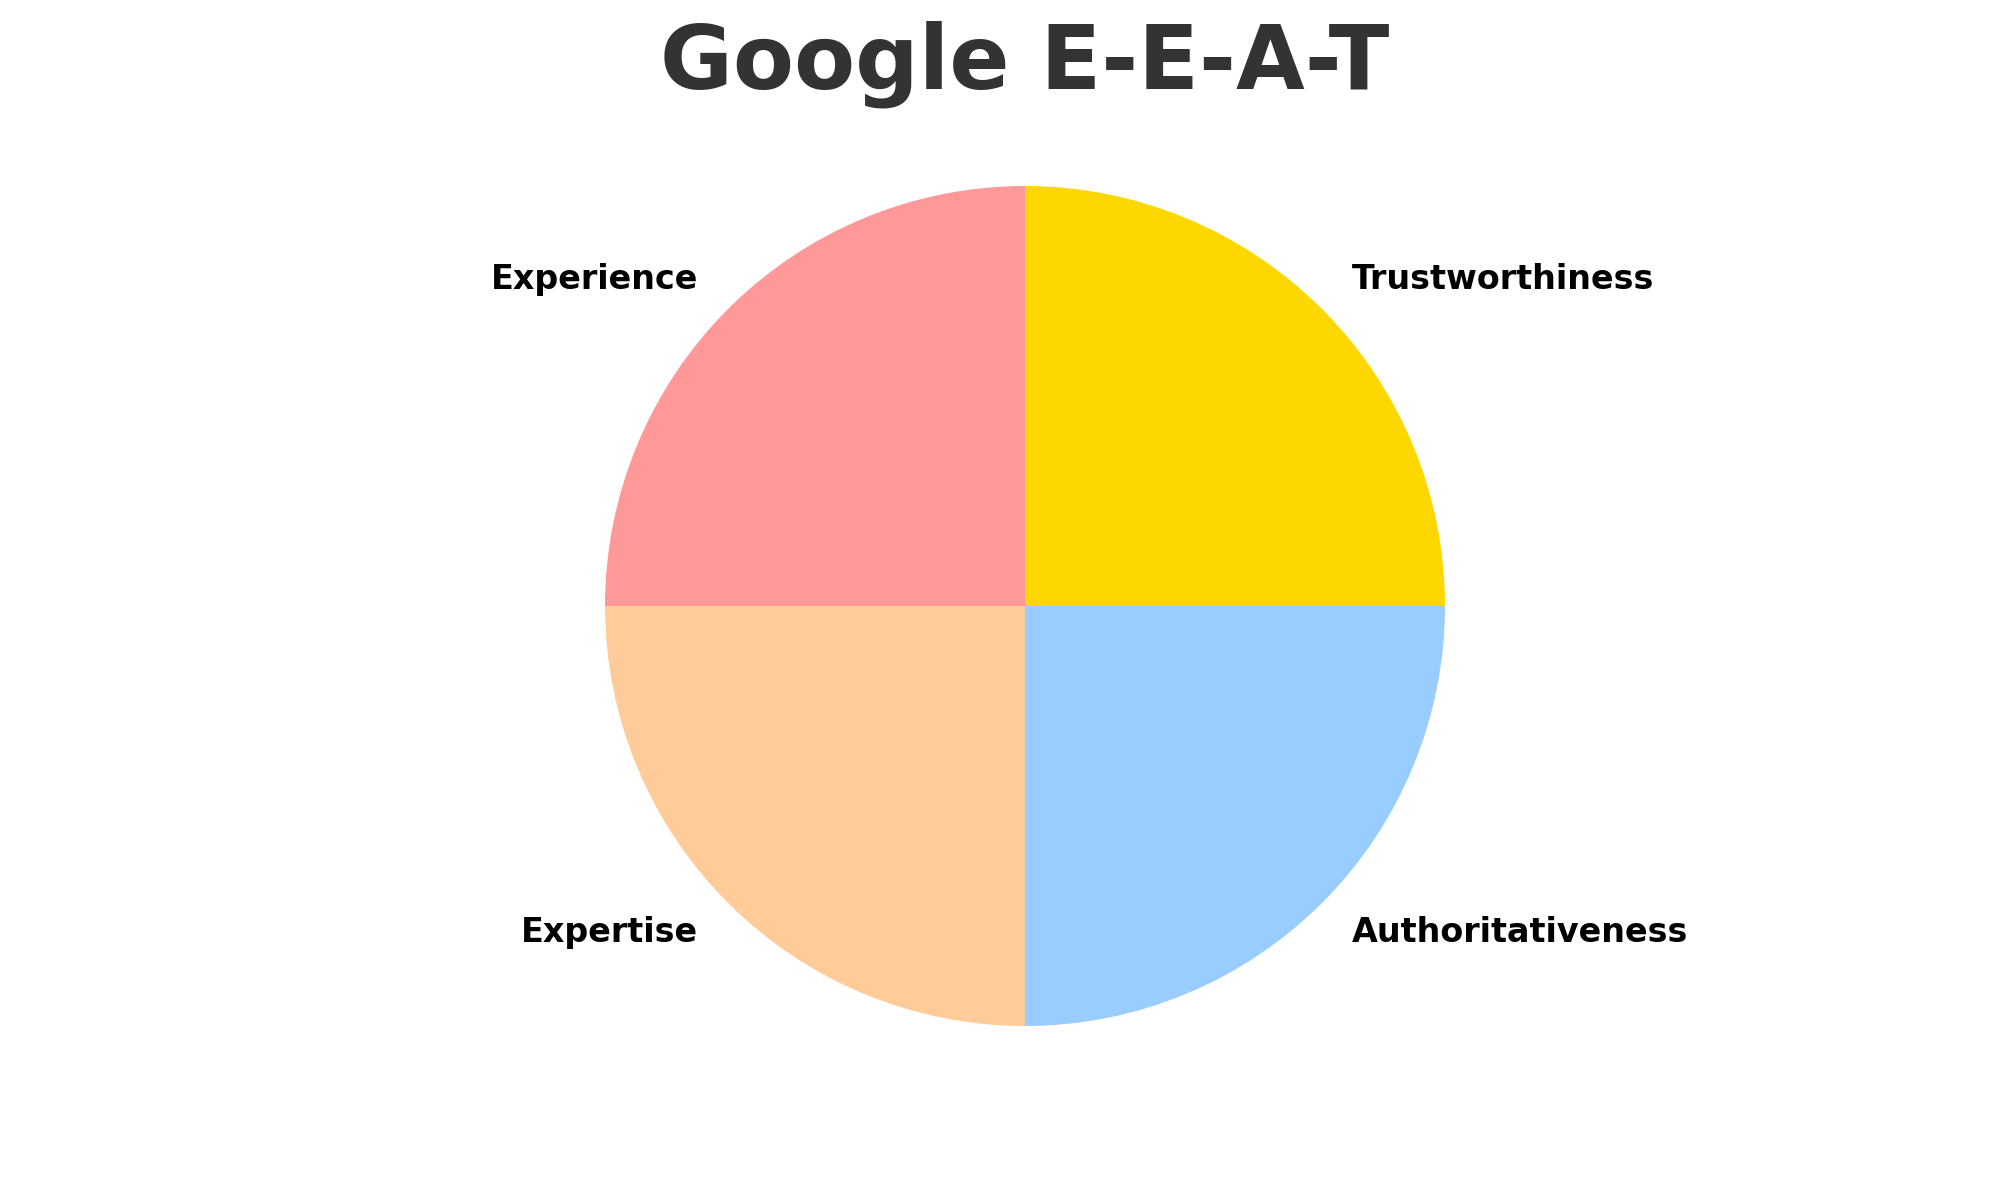 Google_E-E-A-T_Pie_Chart